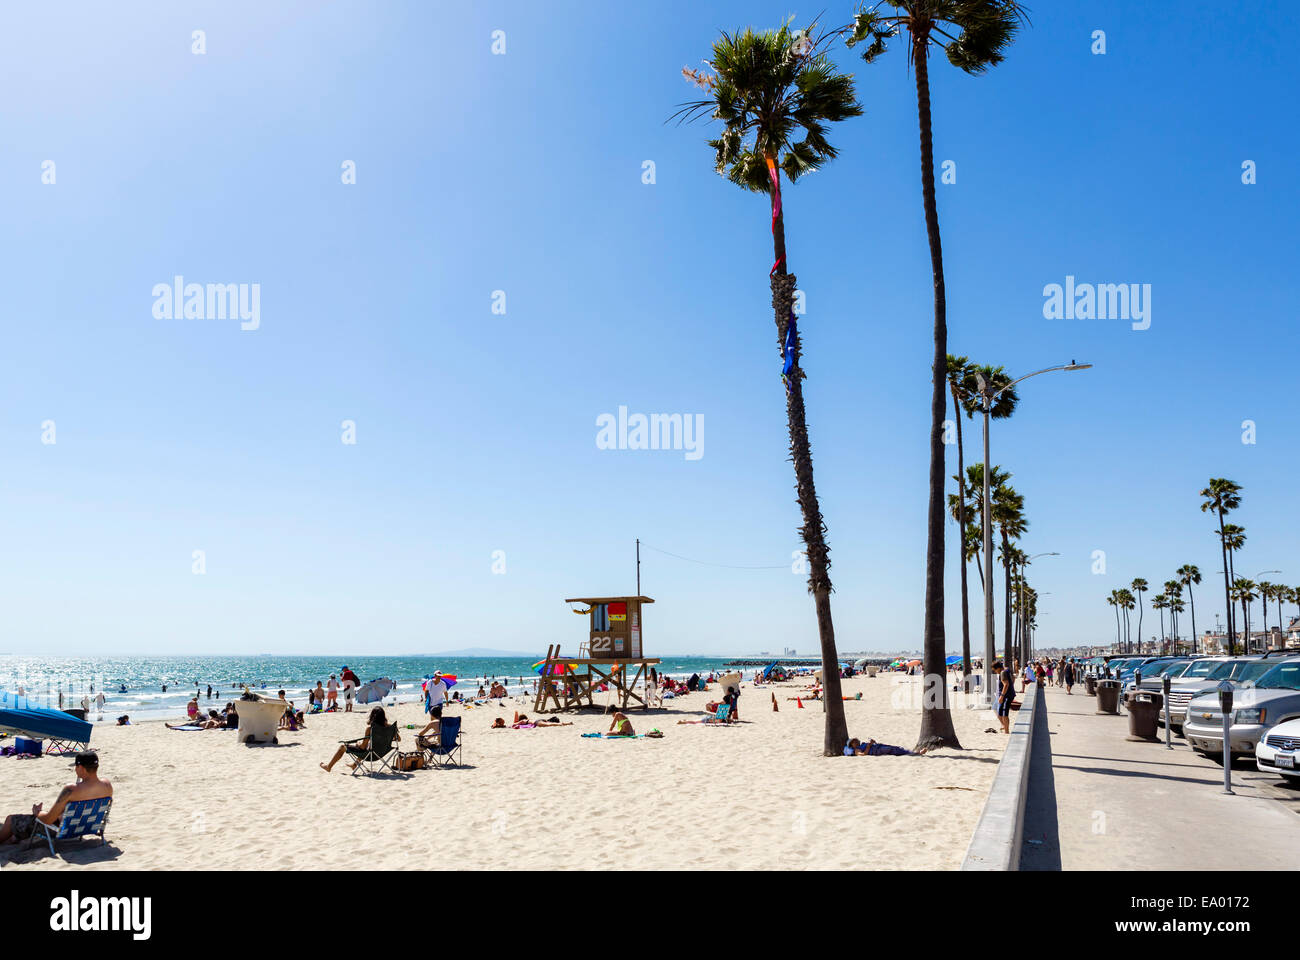 La spiaggia e la passeggiata sul lungomare vicino al molo, Balboa Peninsula, Newport Beach, Orange County, California, Stati Uniti d'America Foto Stock